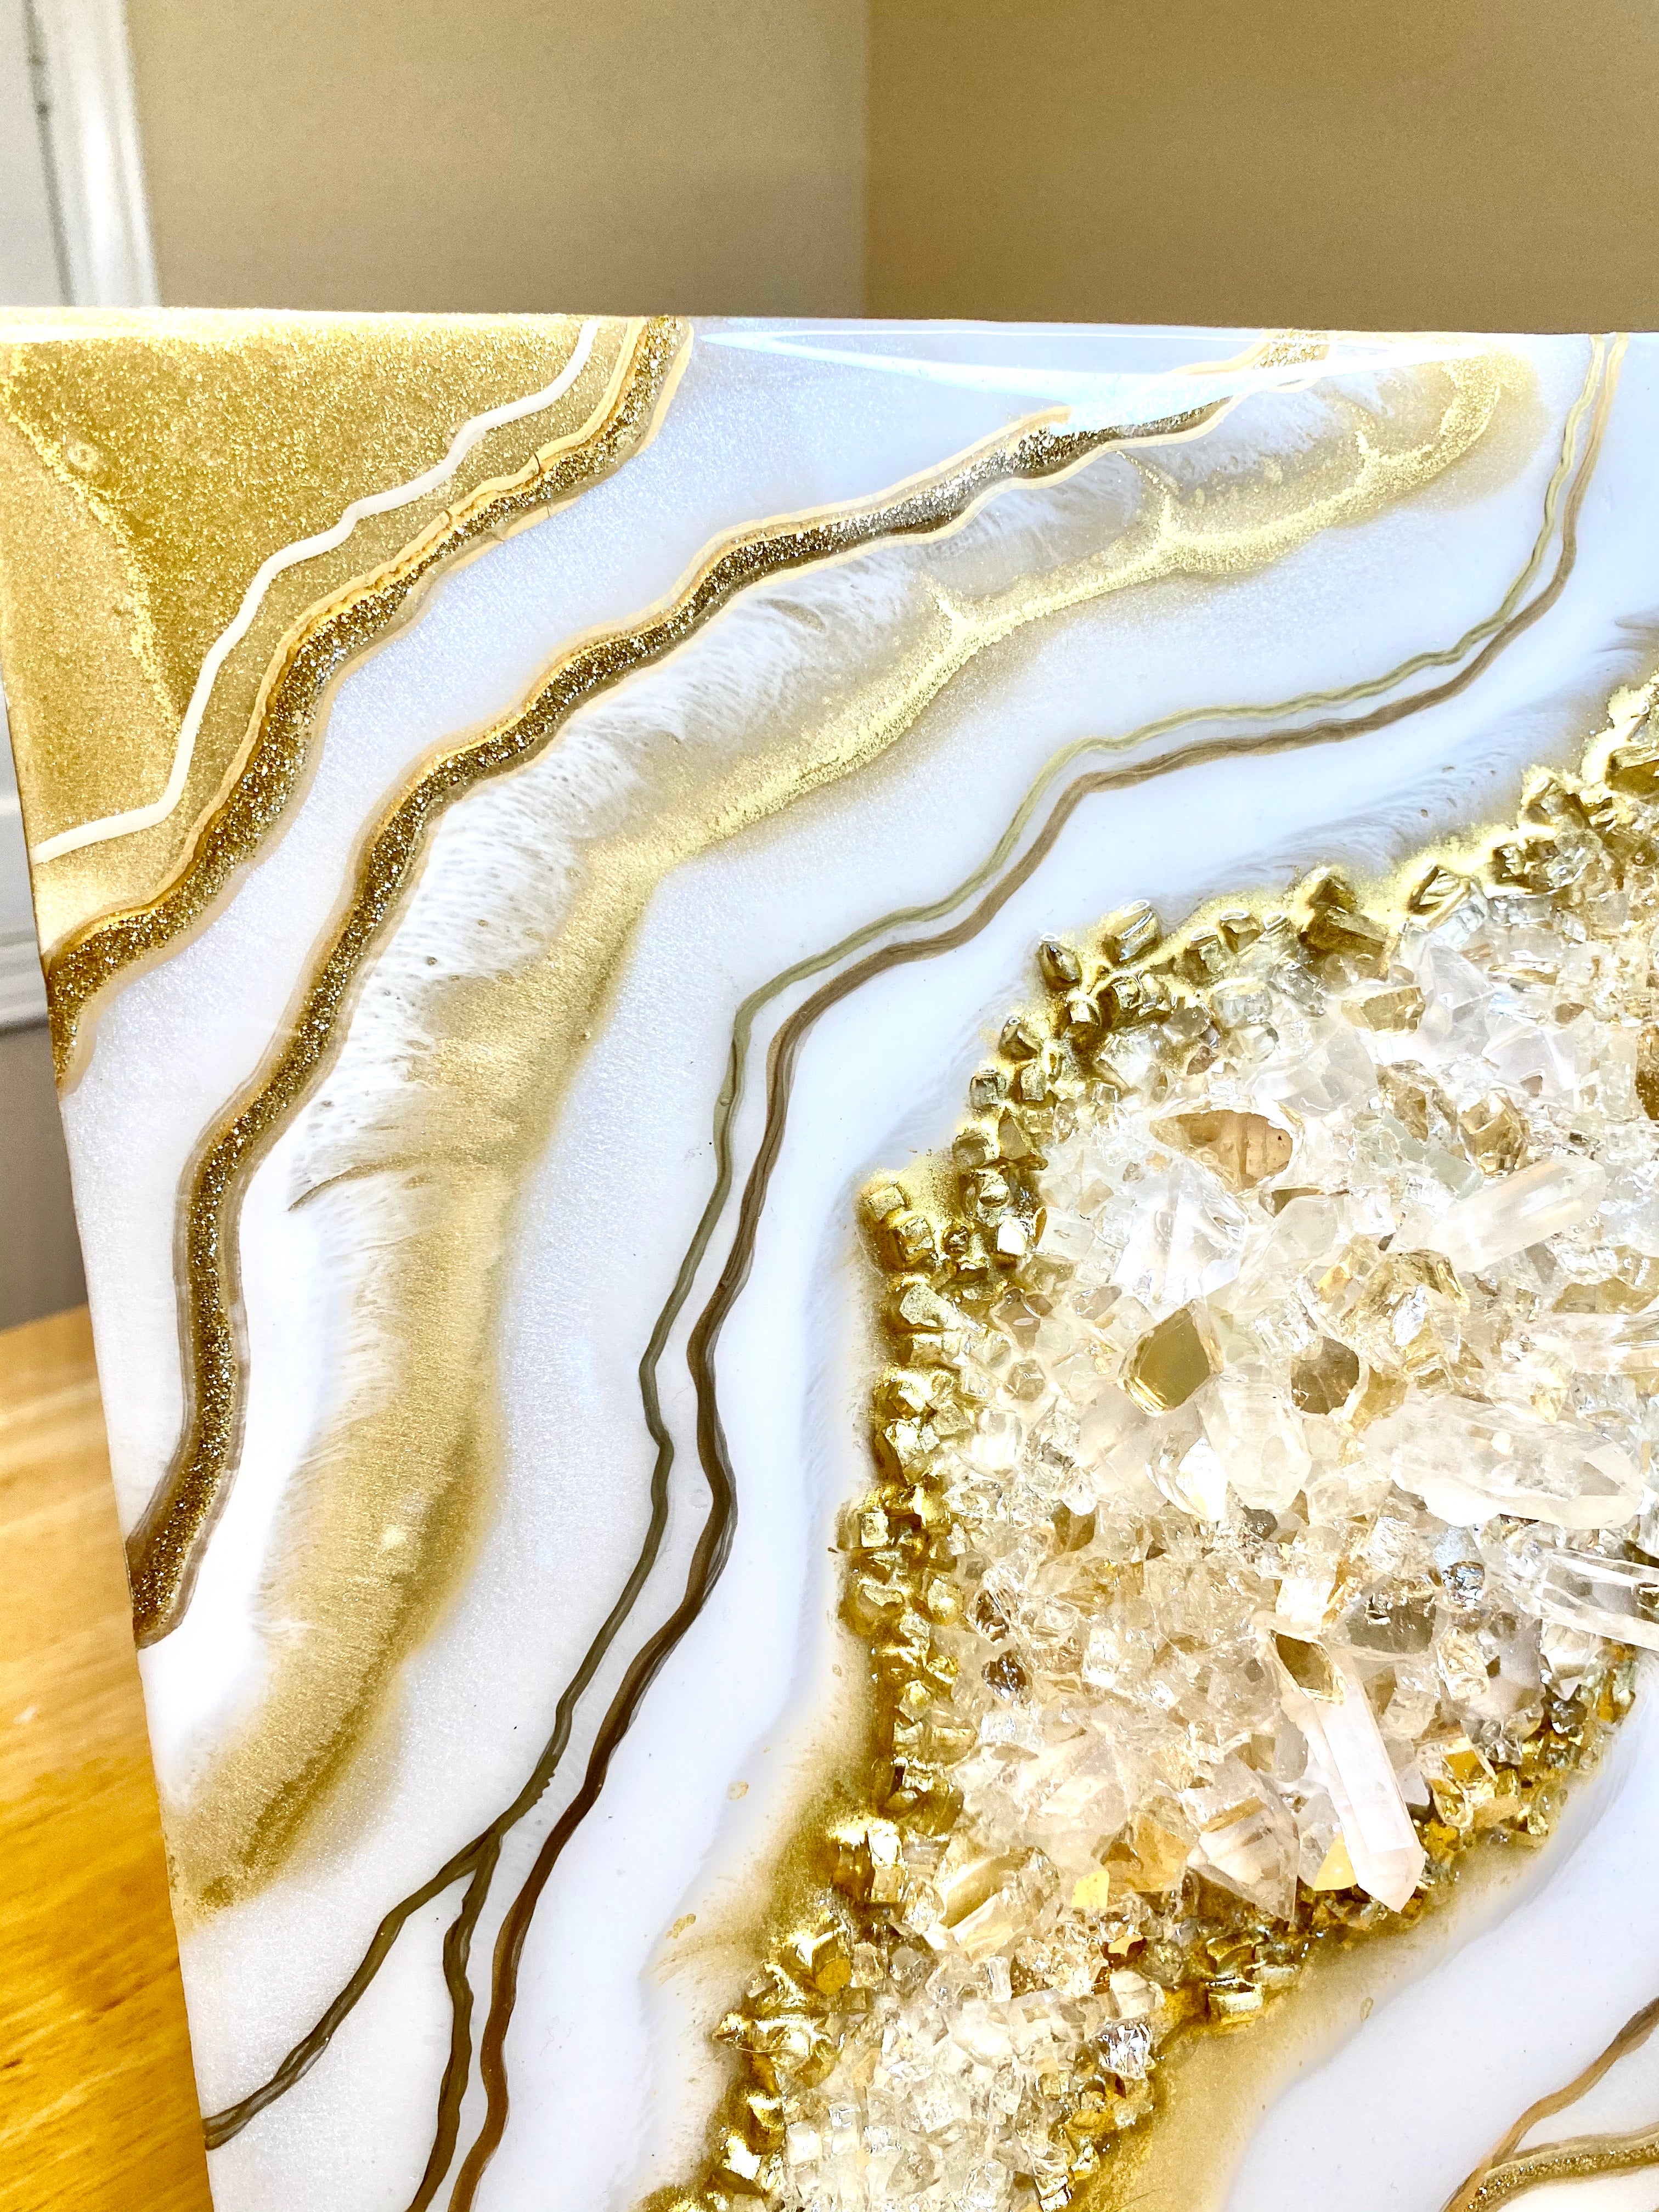 Gold & White Crystal Quartz Geode Resin Art 12x12